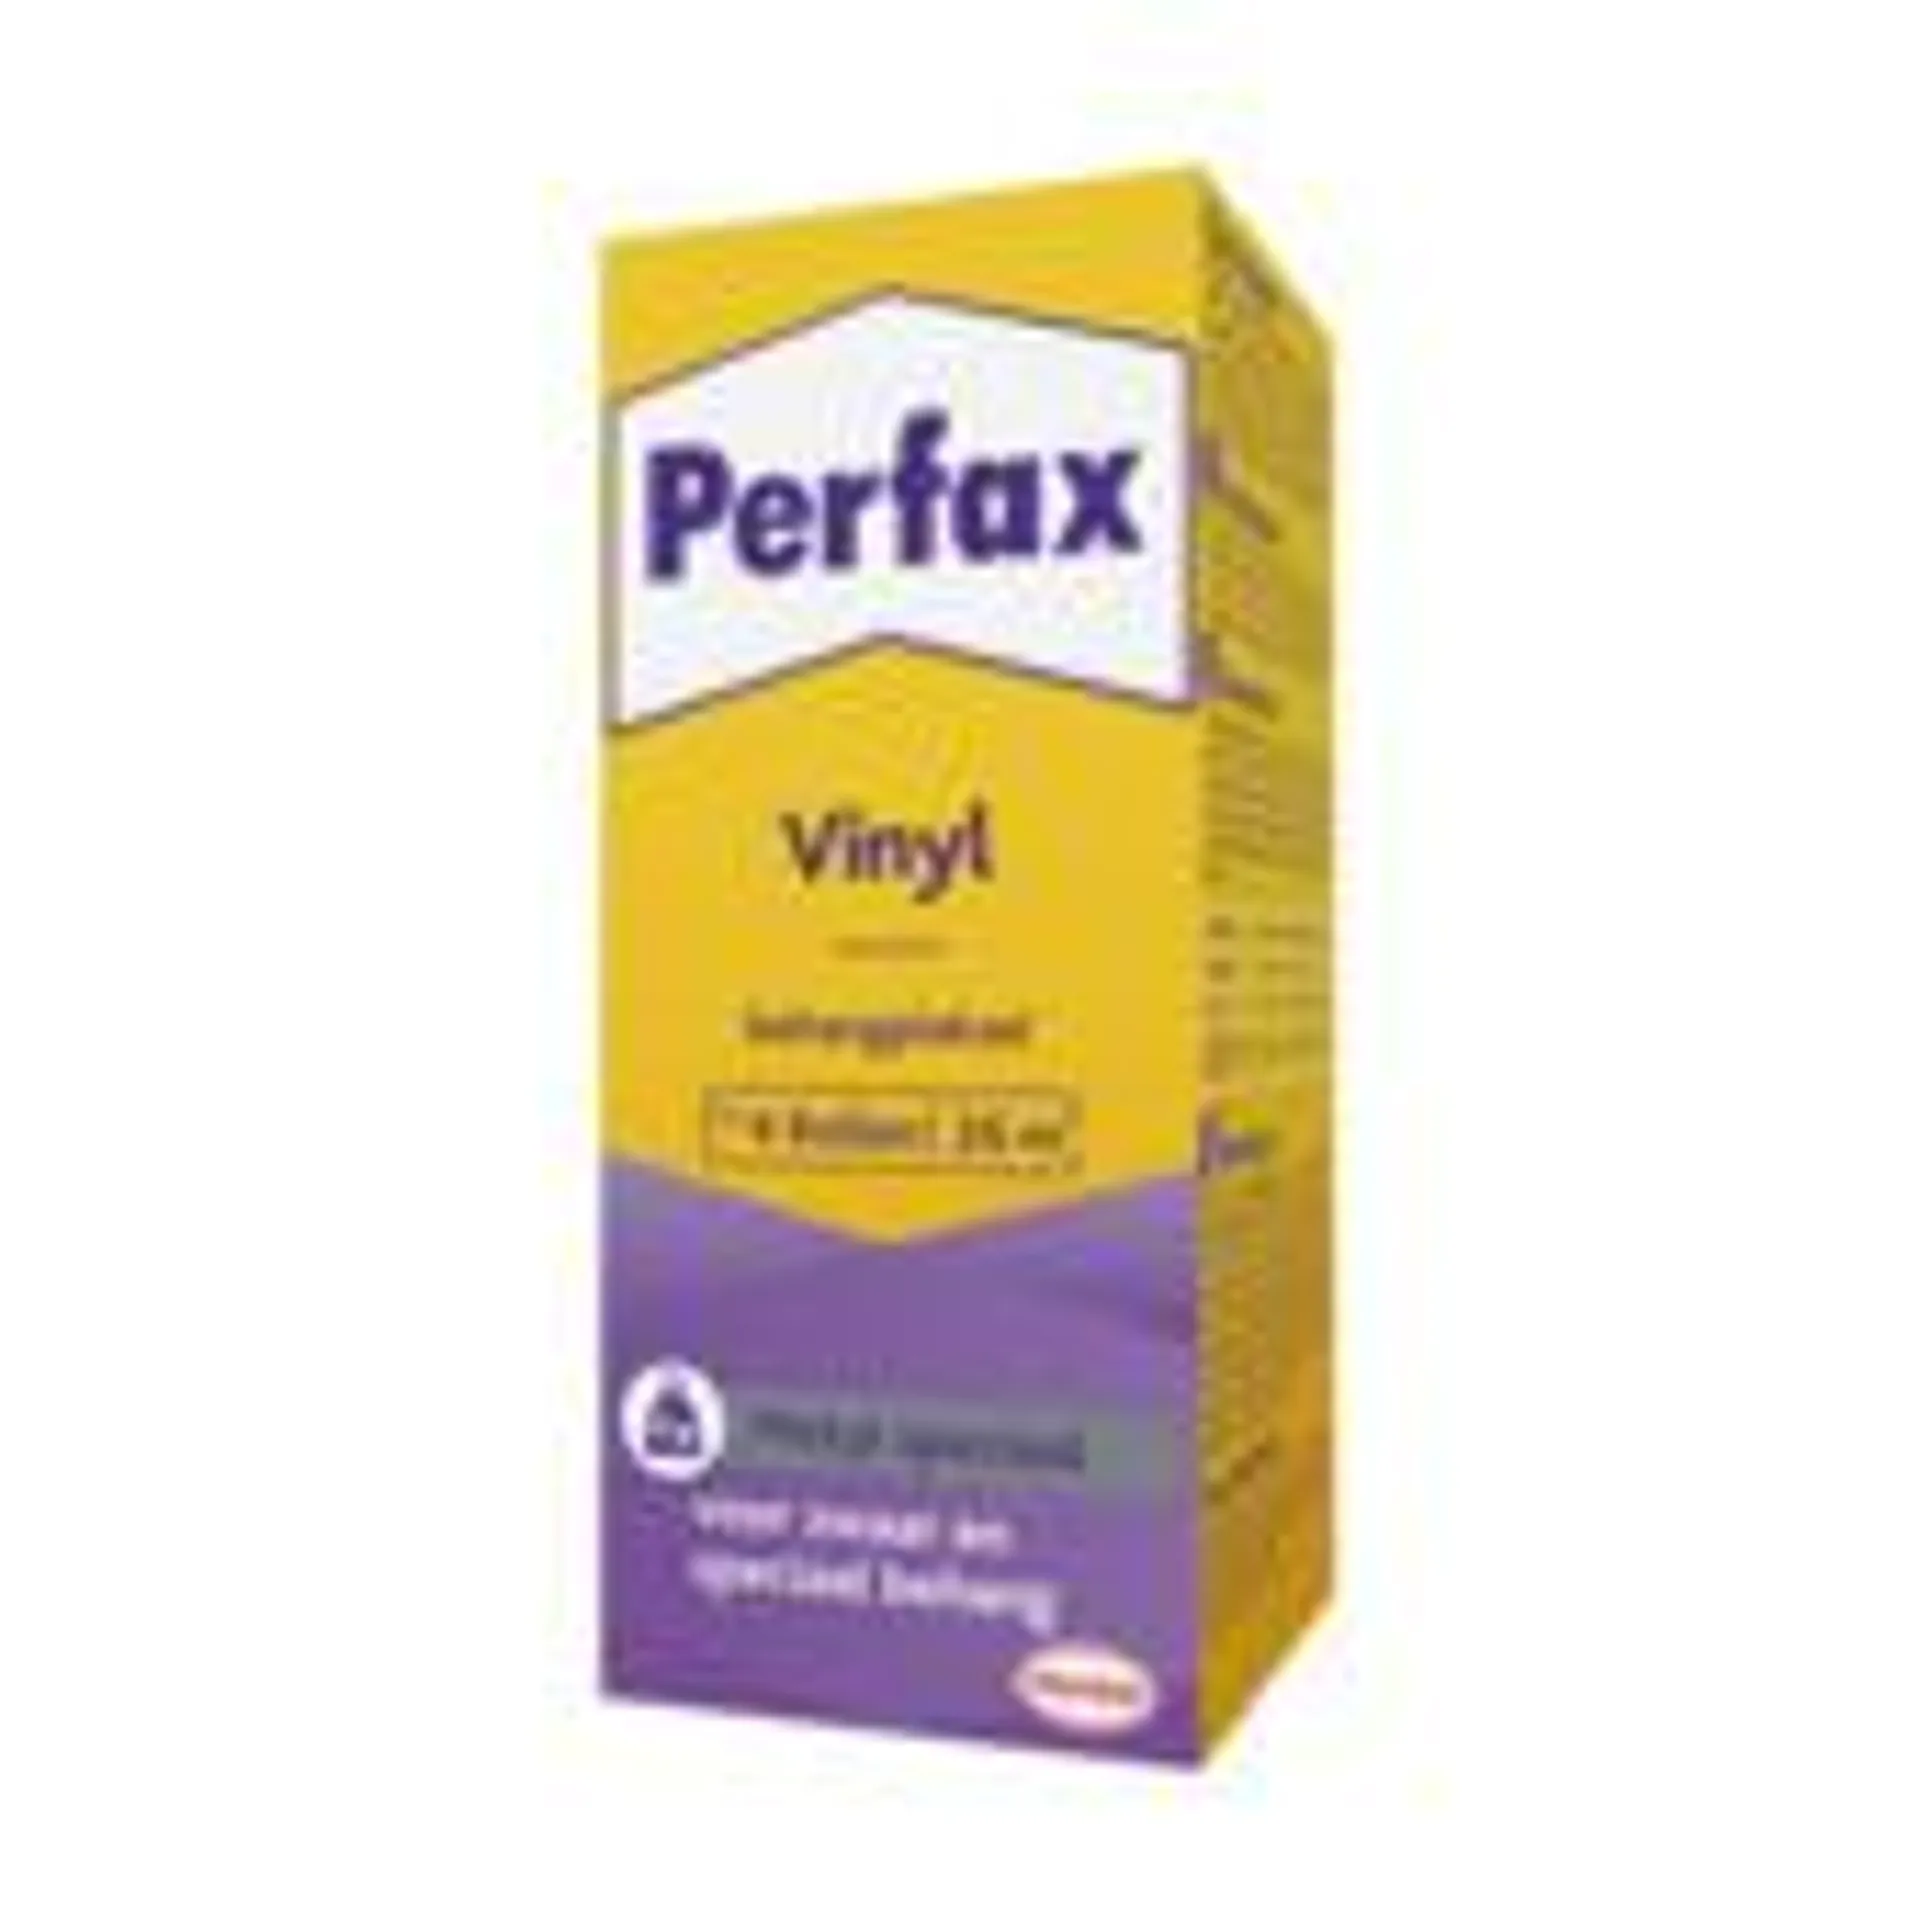 Perfax Vinyl behangplaksel Metyl Speciaal 180 gr